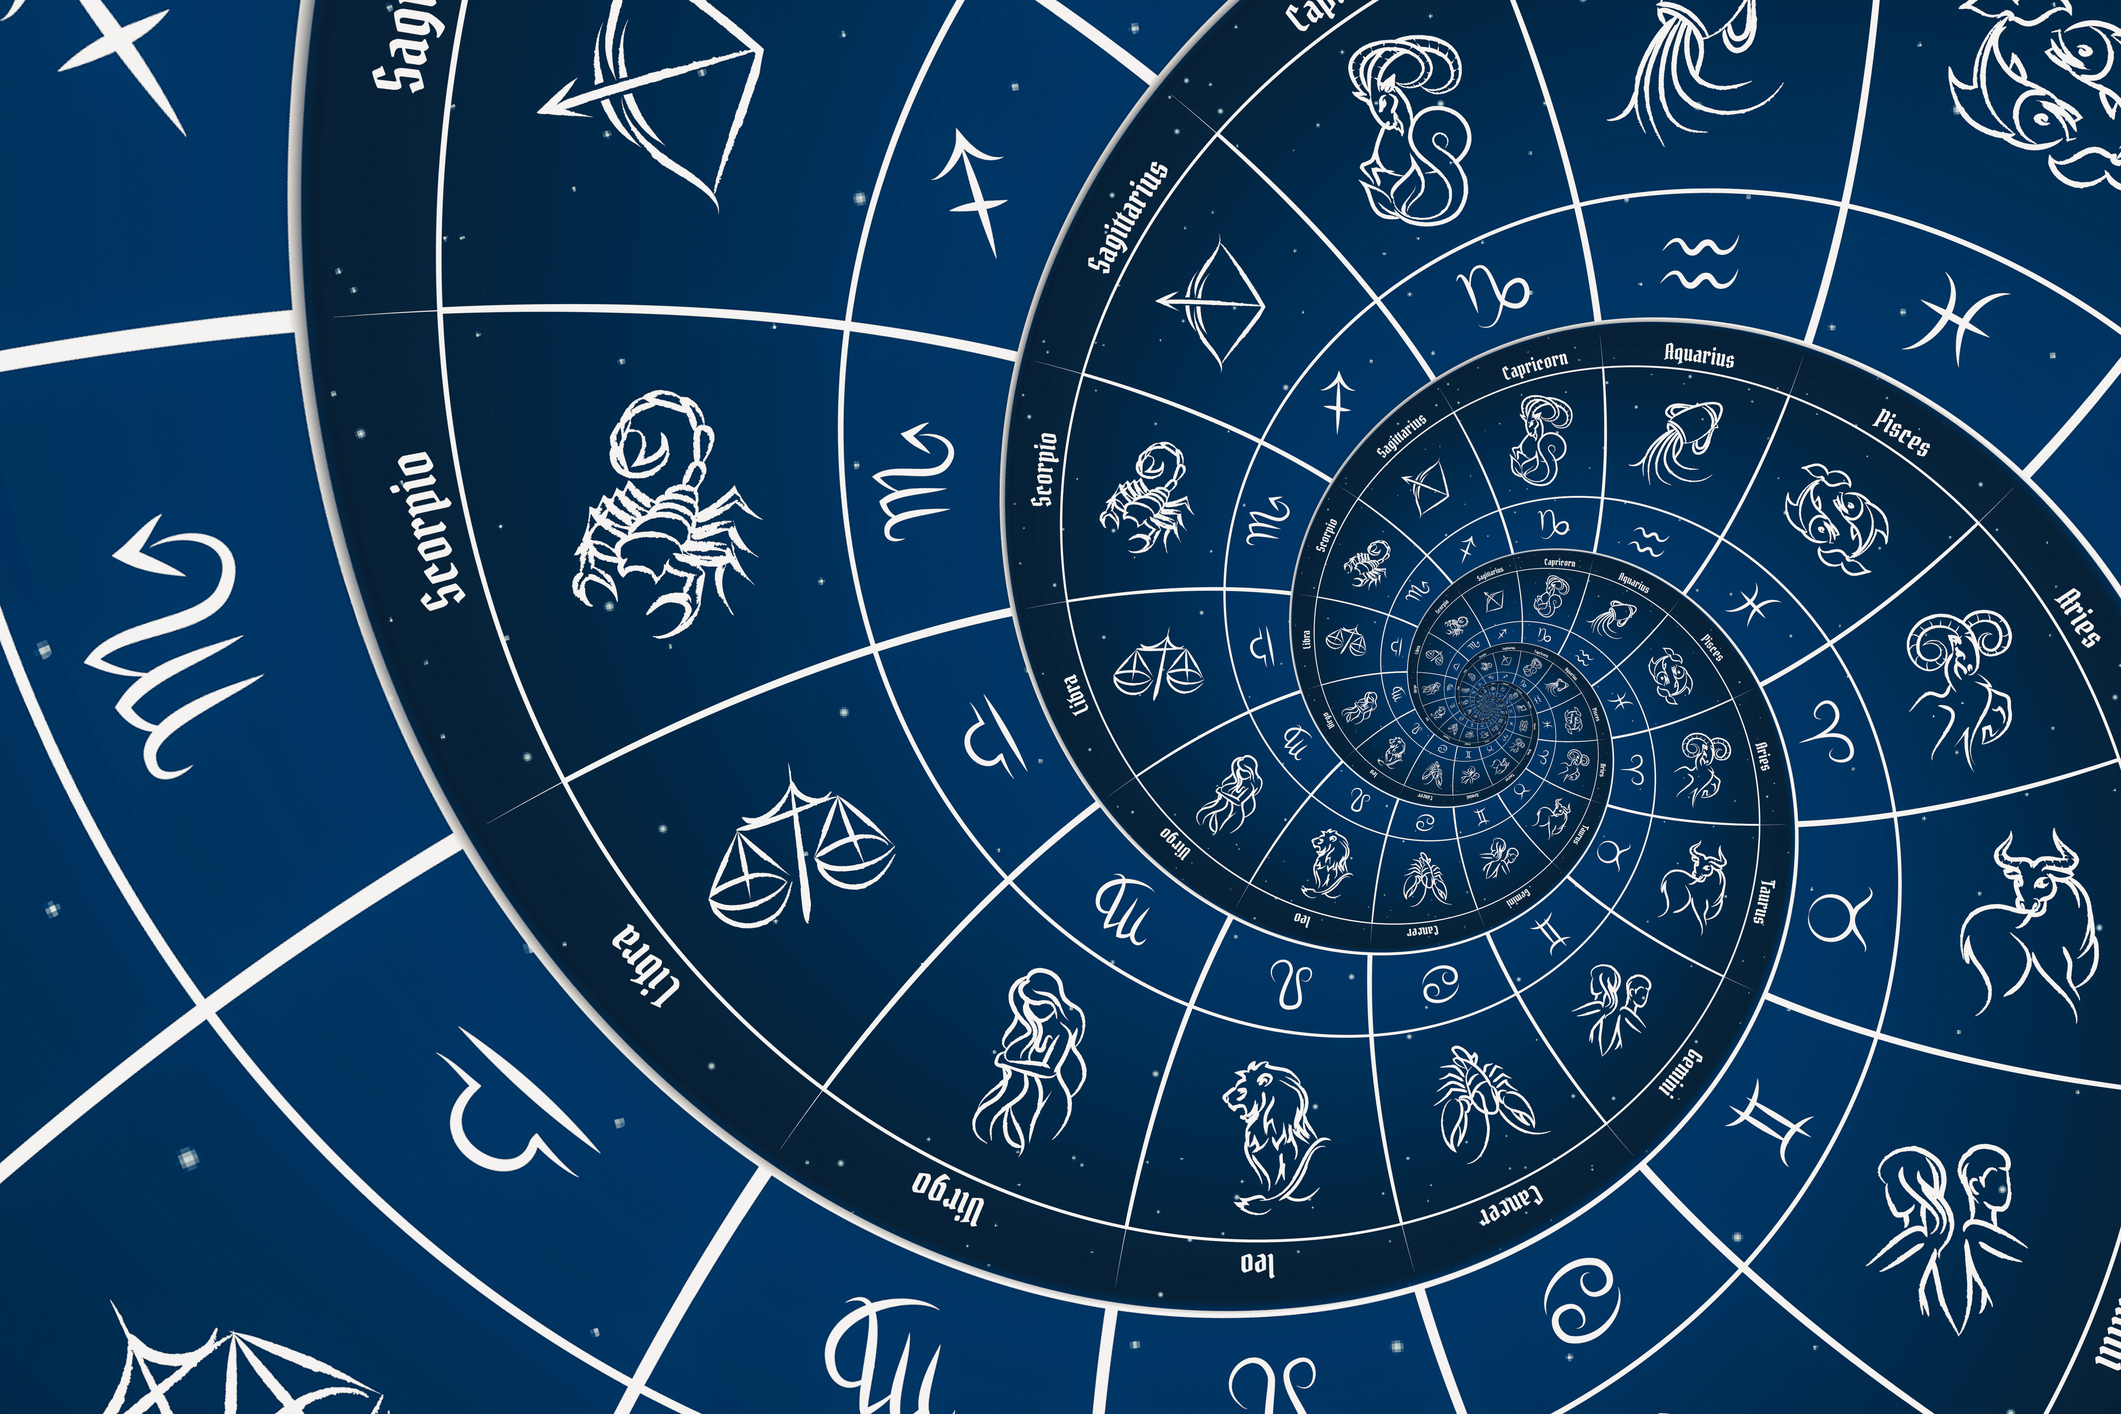 Napi horoszkóp: a Bikát fontos határidő szorongatja, a Mérleg vállalkozásba  kezd, a Skorpió pályát módosít - Blikk Rúzs